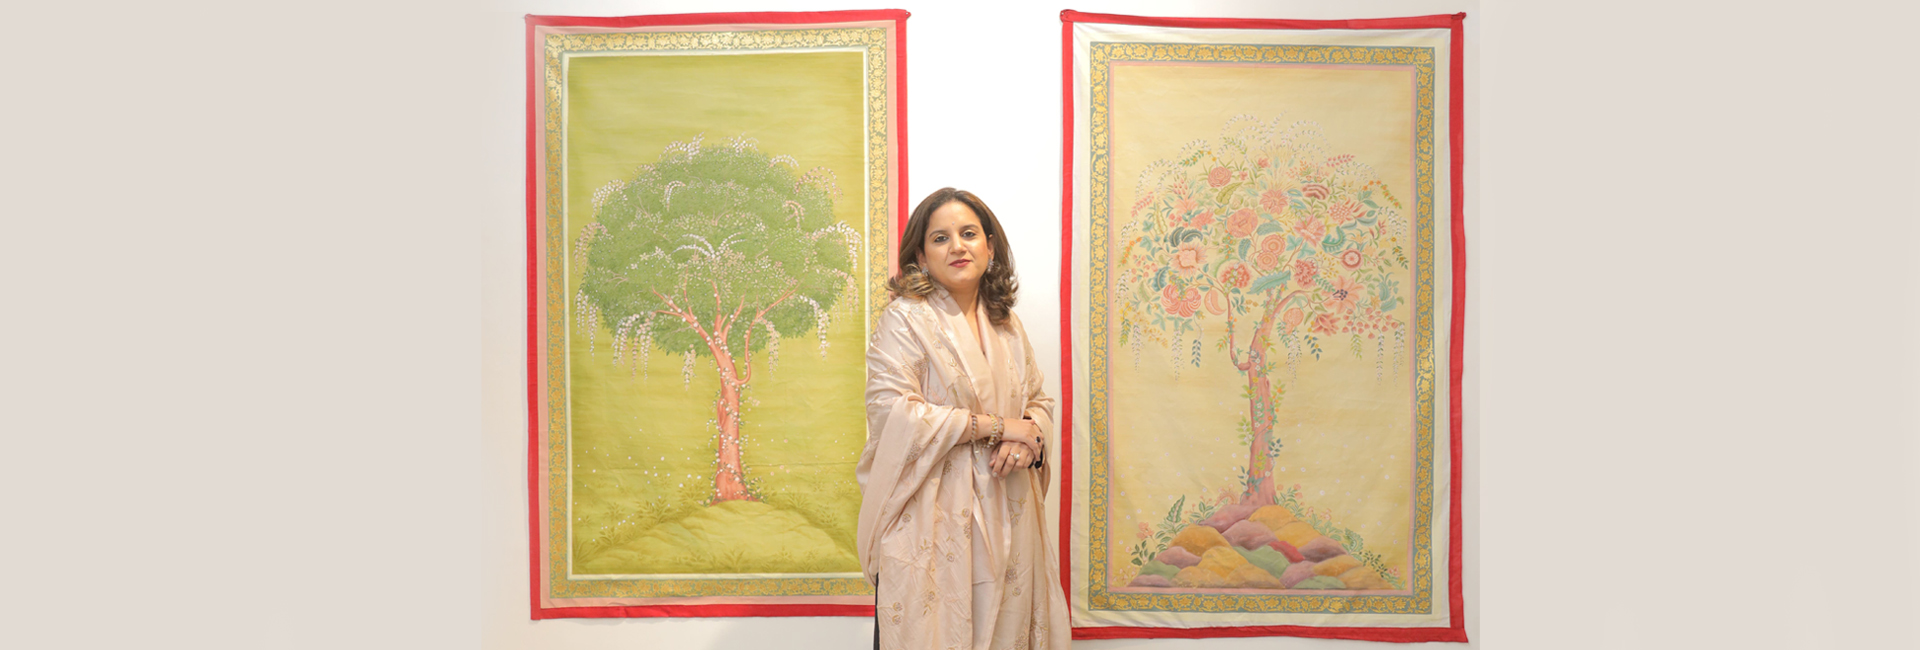 اليوميات الملكية: تعمل الأميرة فايشنافي أميرة كيشانجاره على إحياء الفن المفقود